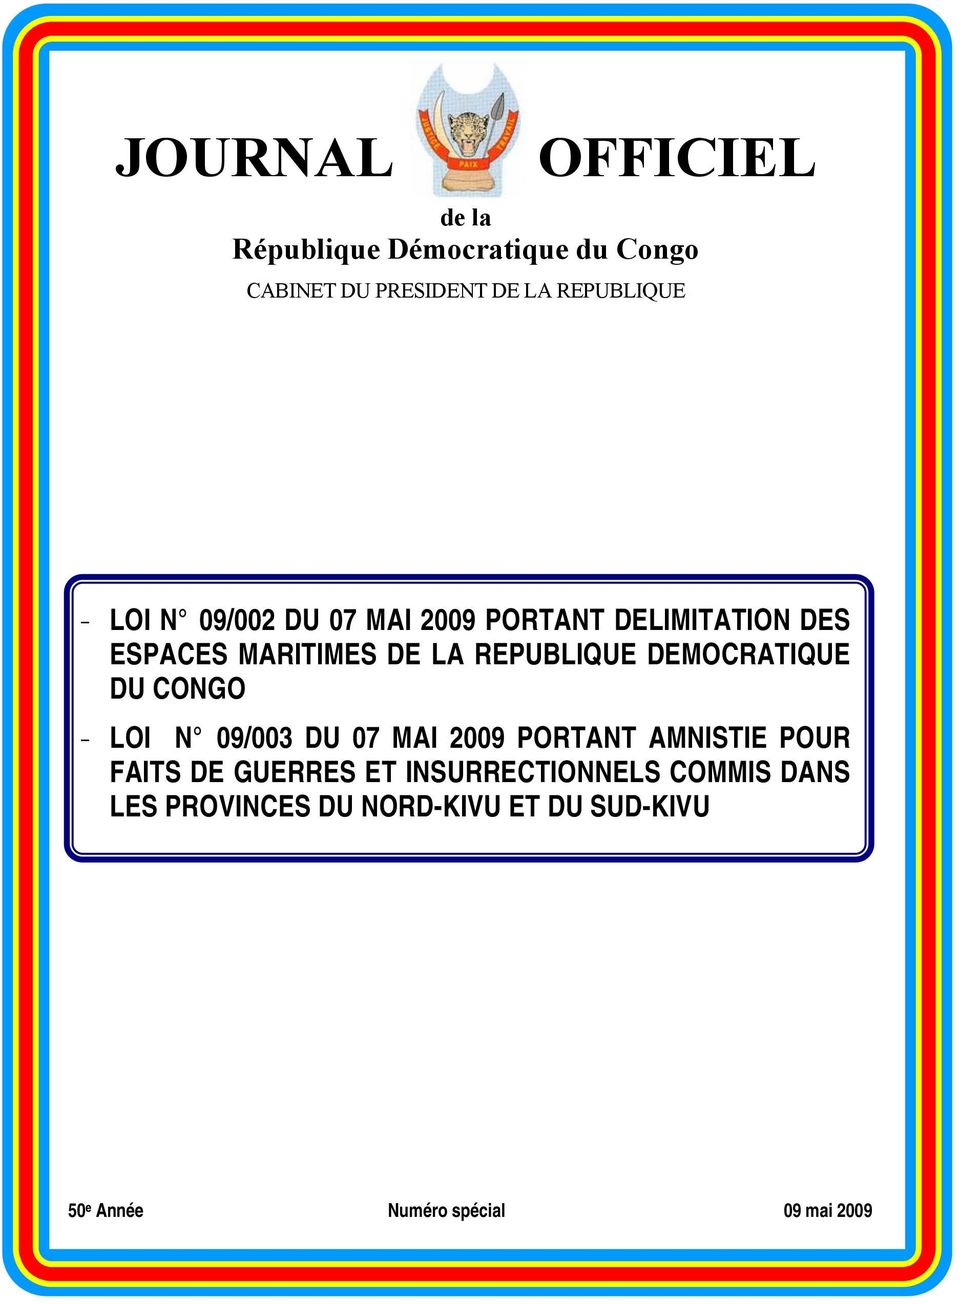 DEMOCRATIQUE DU CONGO - LOI N 09/003 DU 07 MAI 2009 PORTANT AMNISTIE POUR FAITS DE GUERRES ET